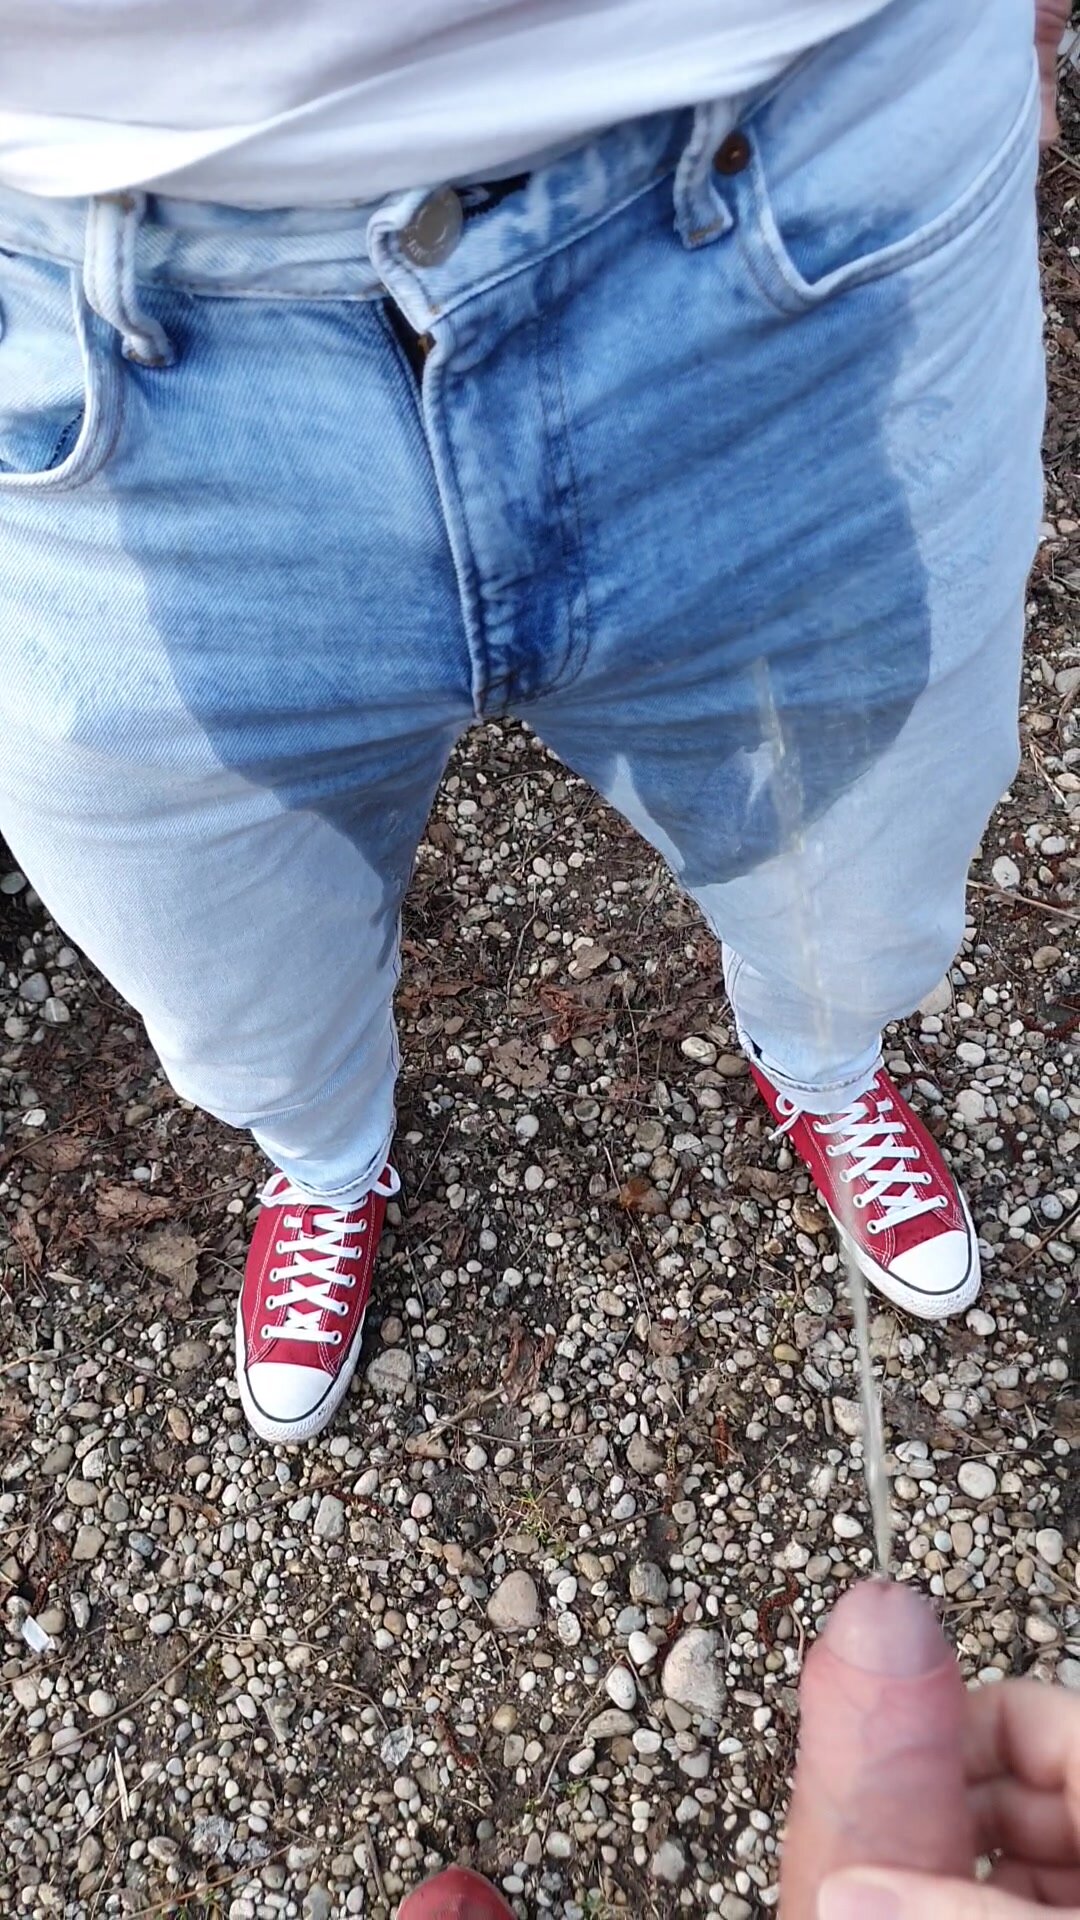 Soaking jeans